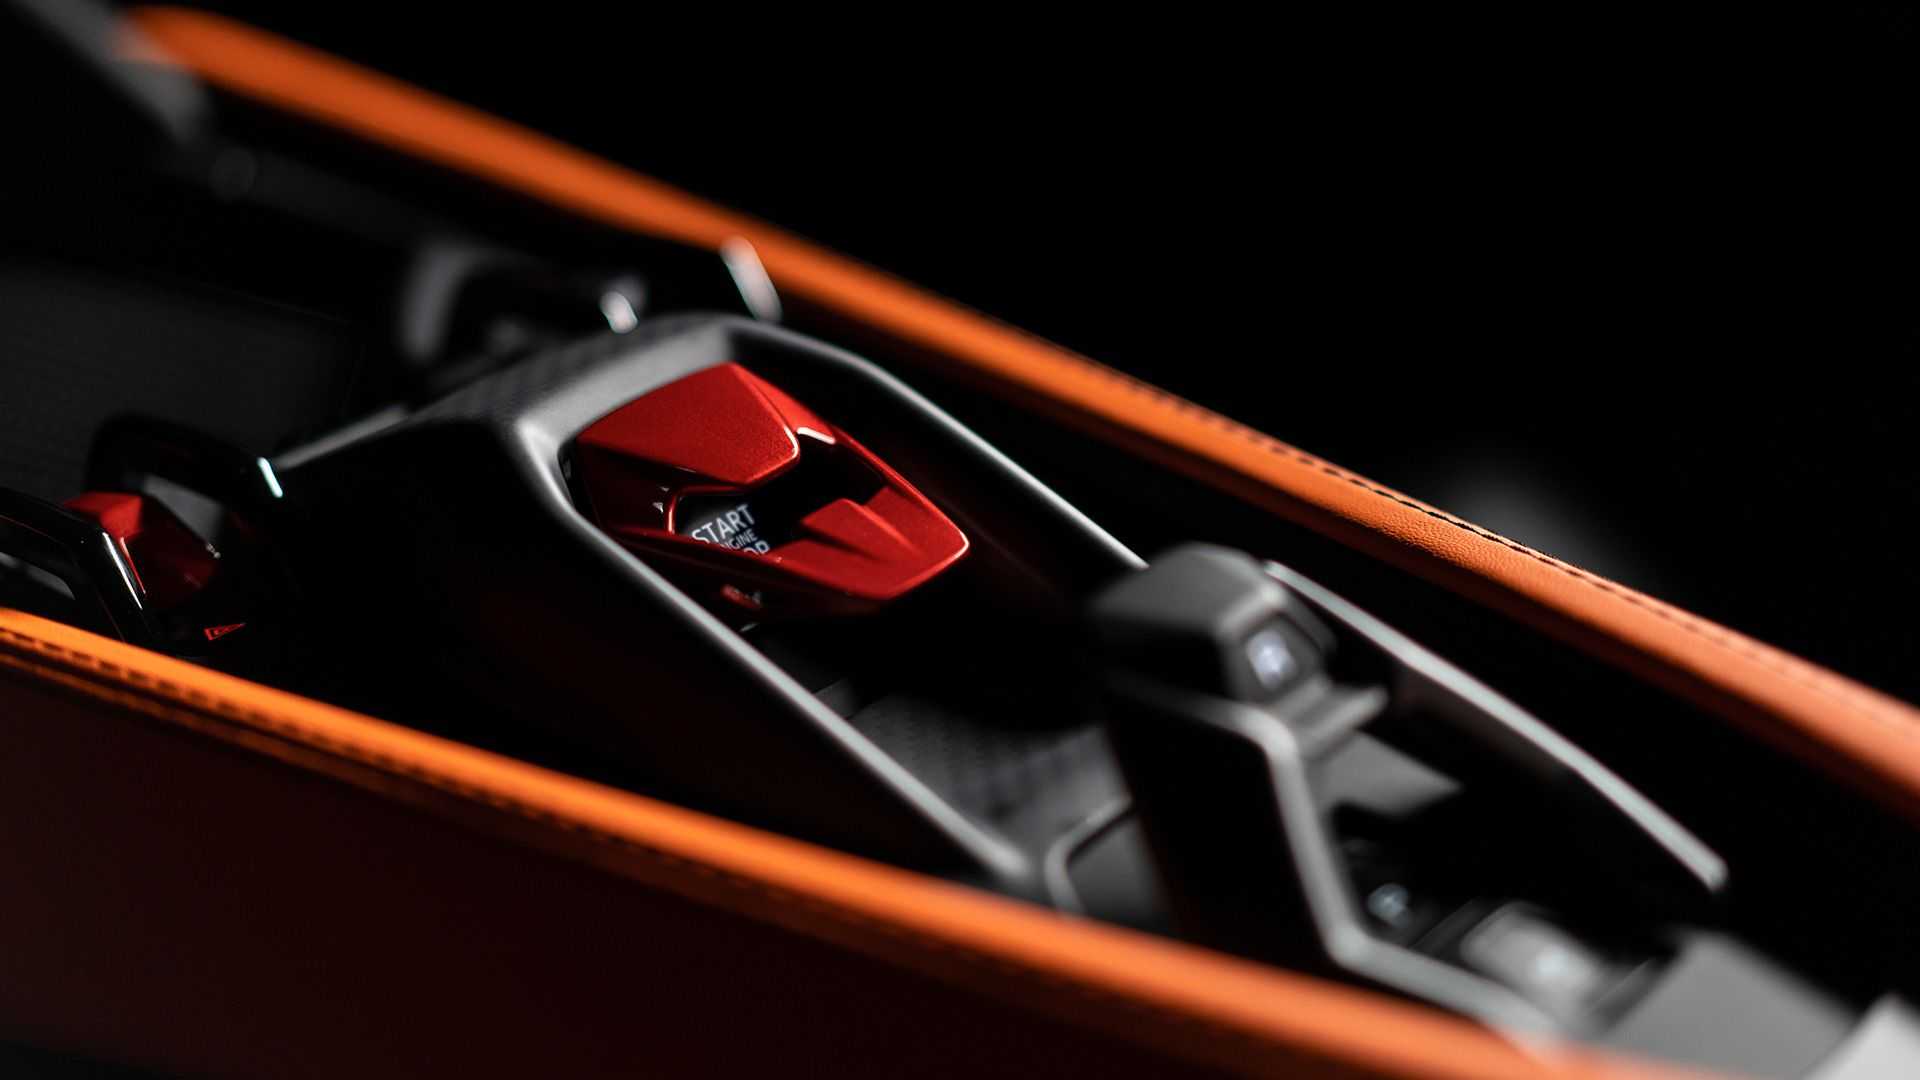 Ra mắt Lamborghini Revuelto thế chỗ Aventador: Siêu xe mạnh nhất lịch sử hãng nhưng đi phố chỉ ngang cơ Civic - ảnh 18